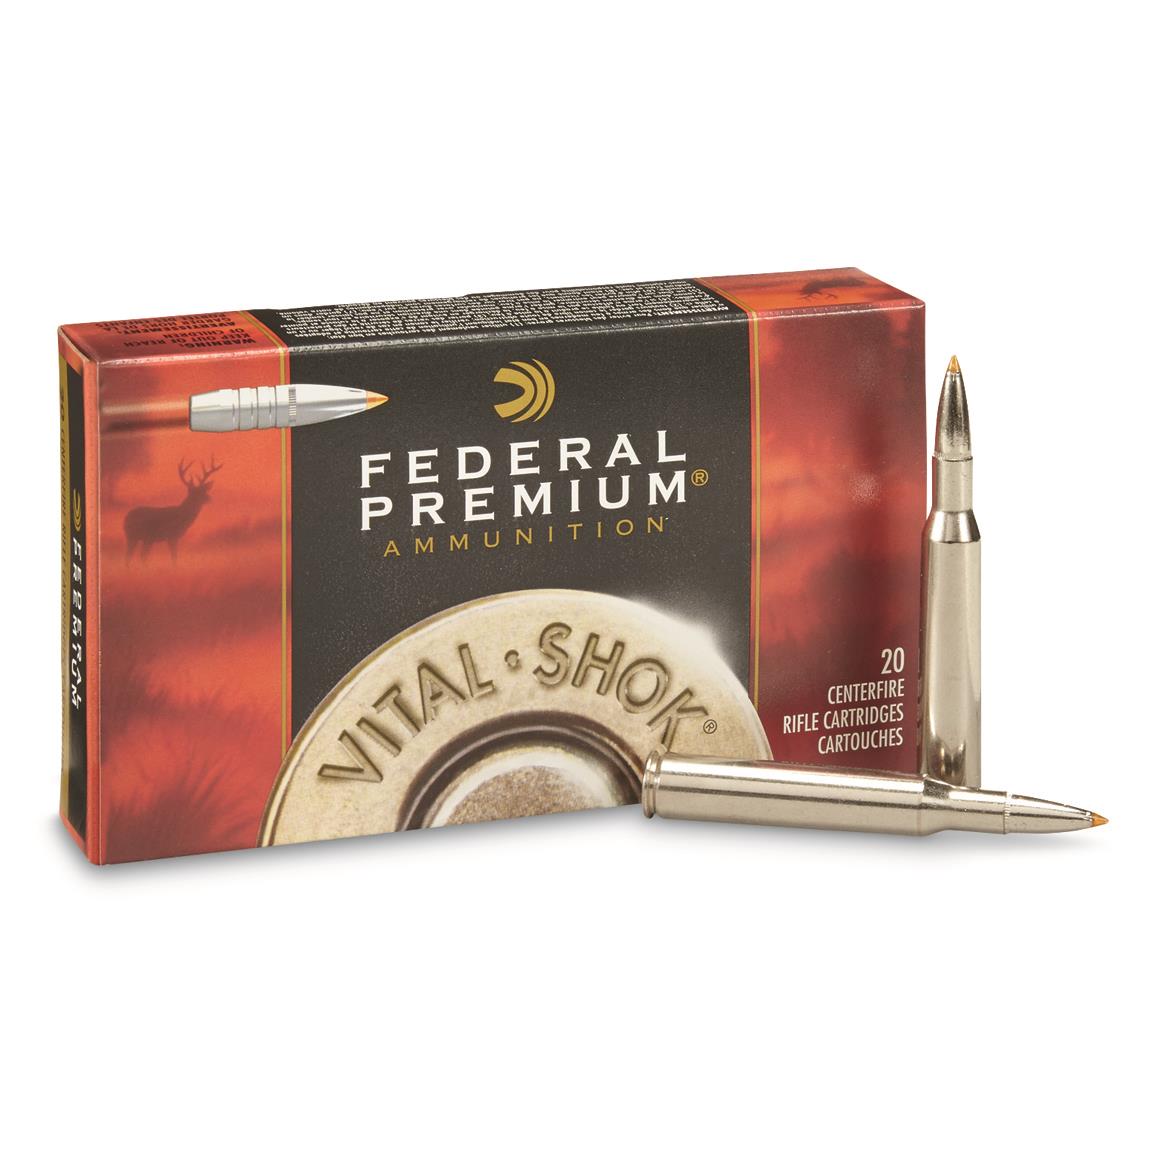 Federal Premium® ammo